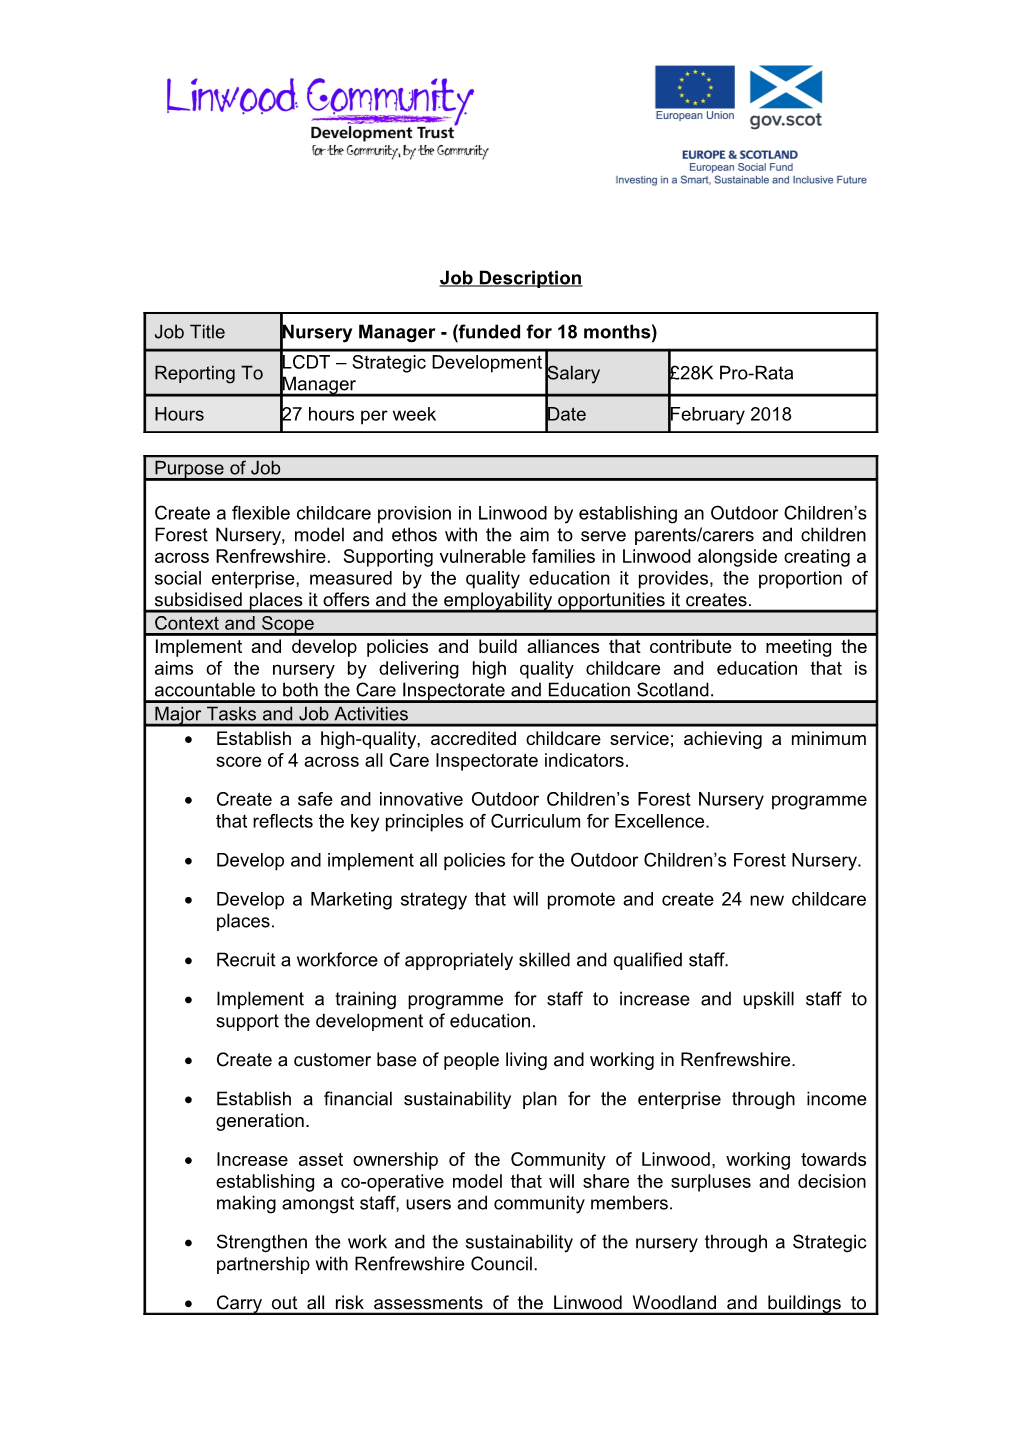 Section 1 - Job Description